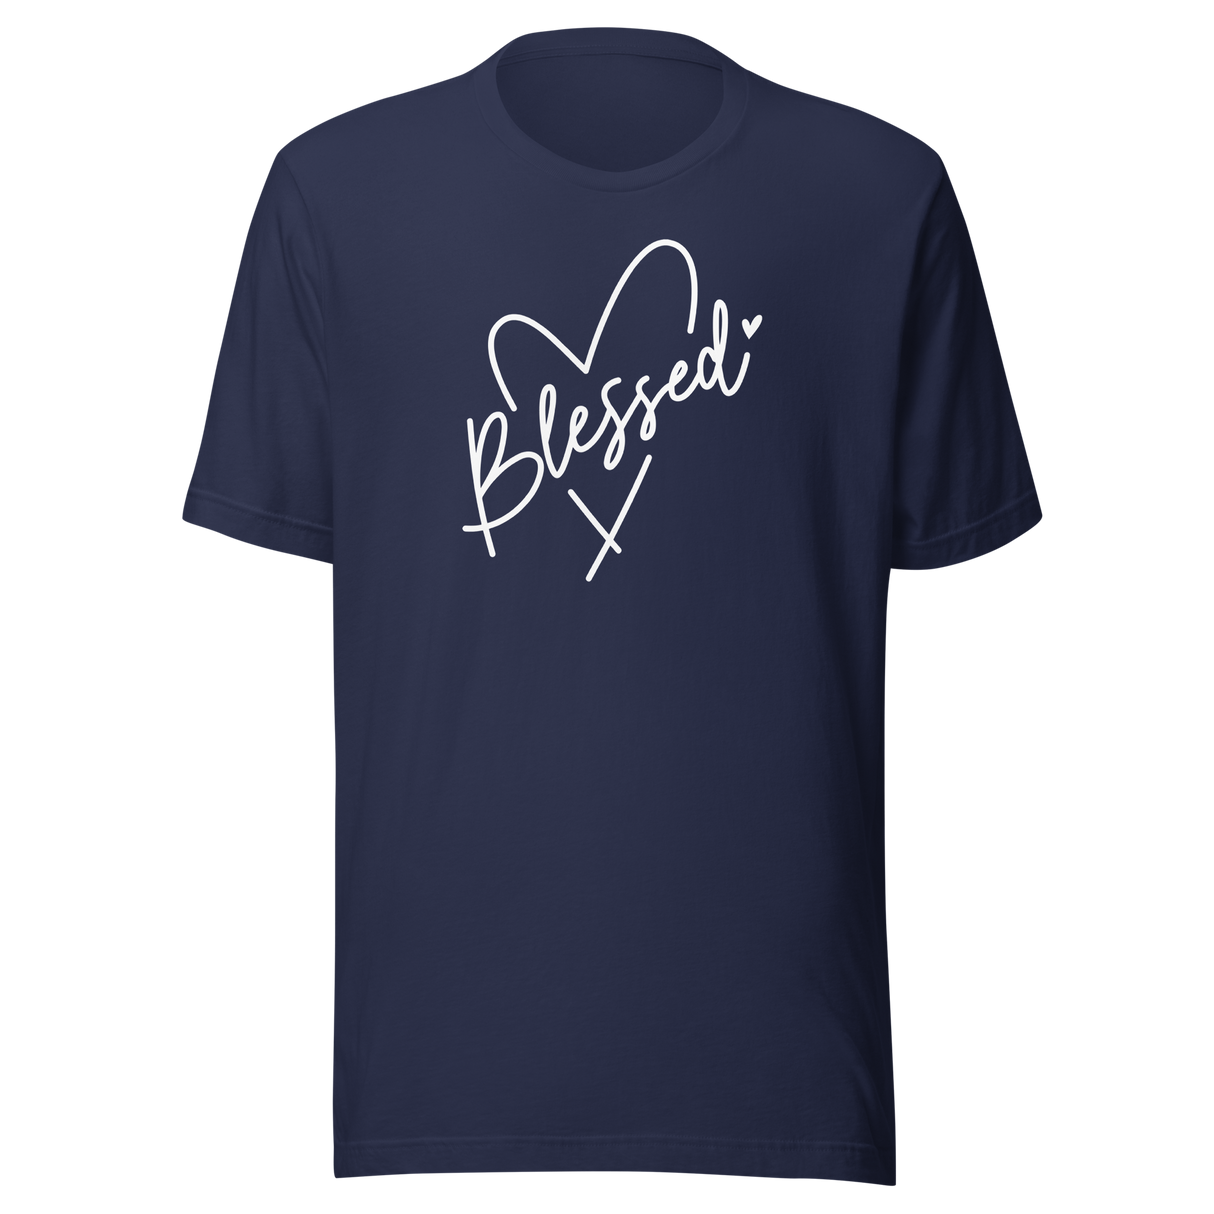 blessed-with-heart-faith-tee-faith-t-shirt-blessed-tee-heart-t-shirt-love-tee#color_navy